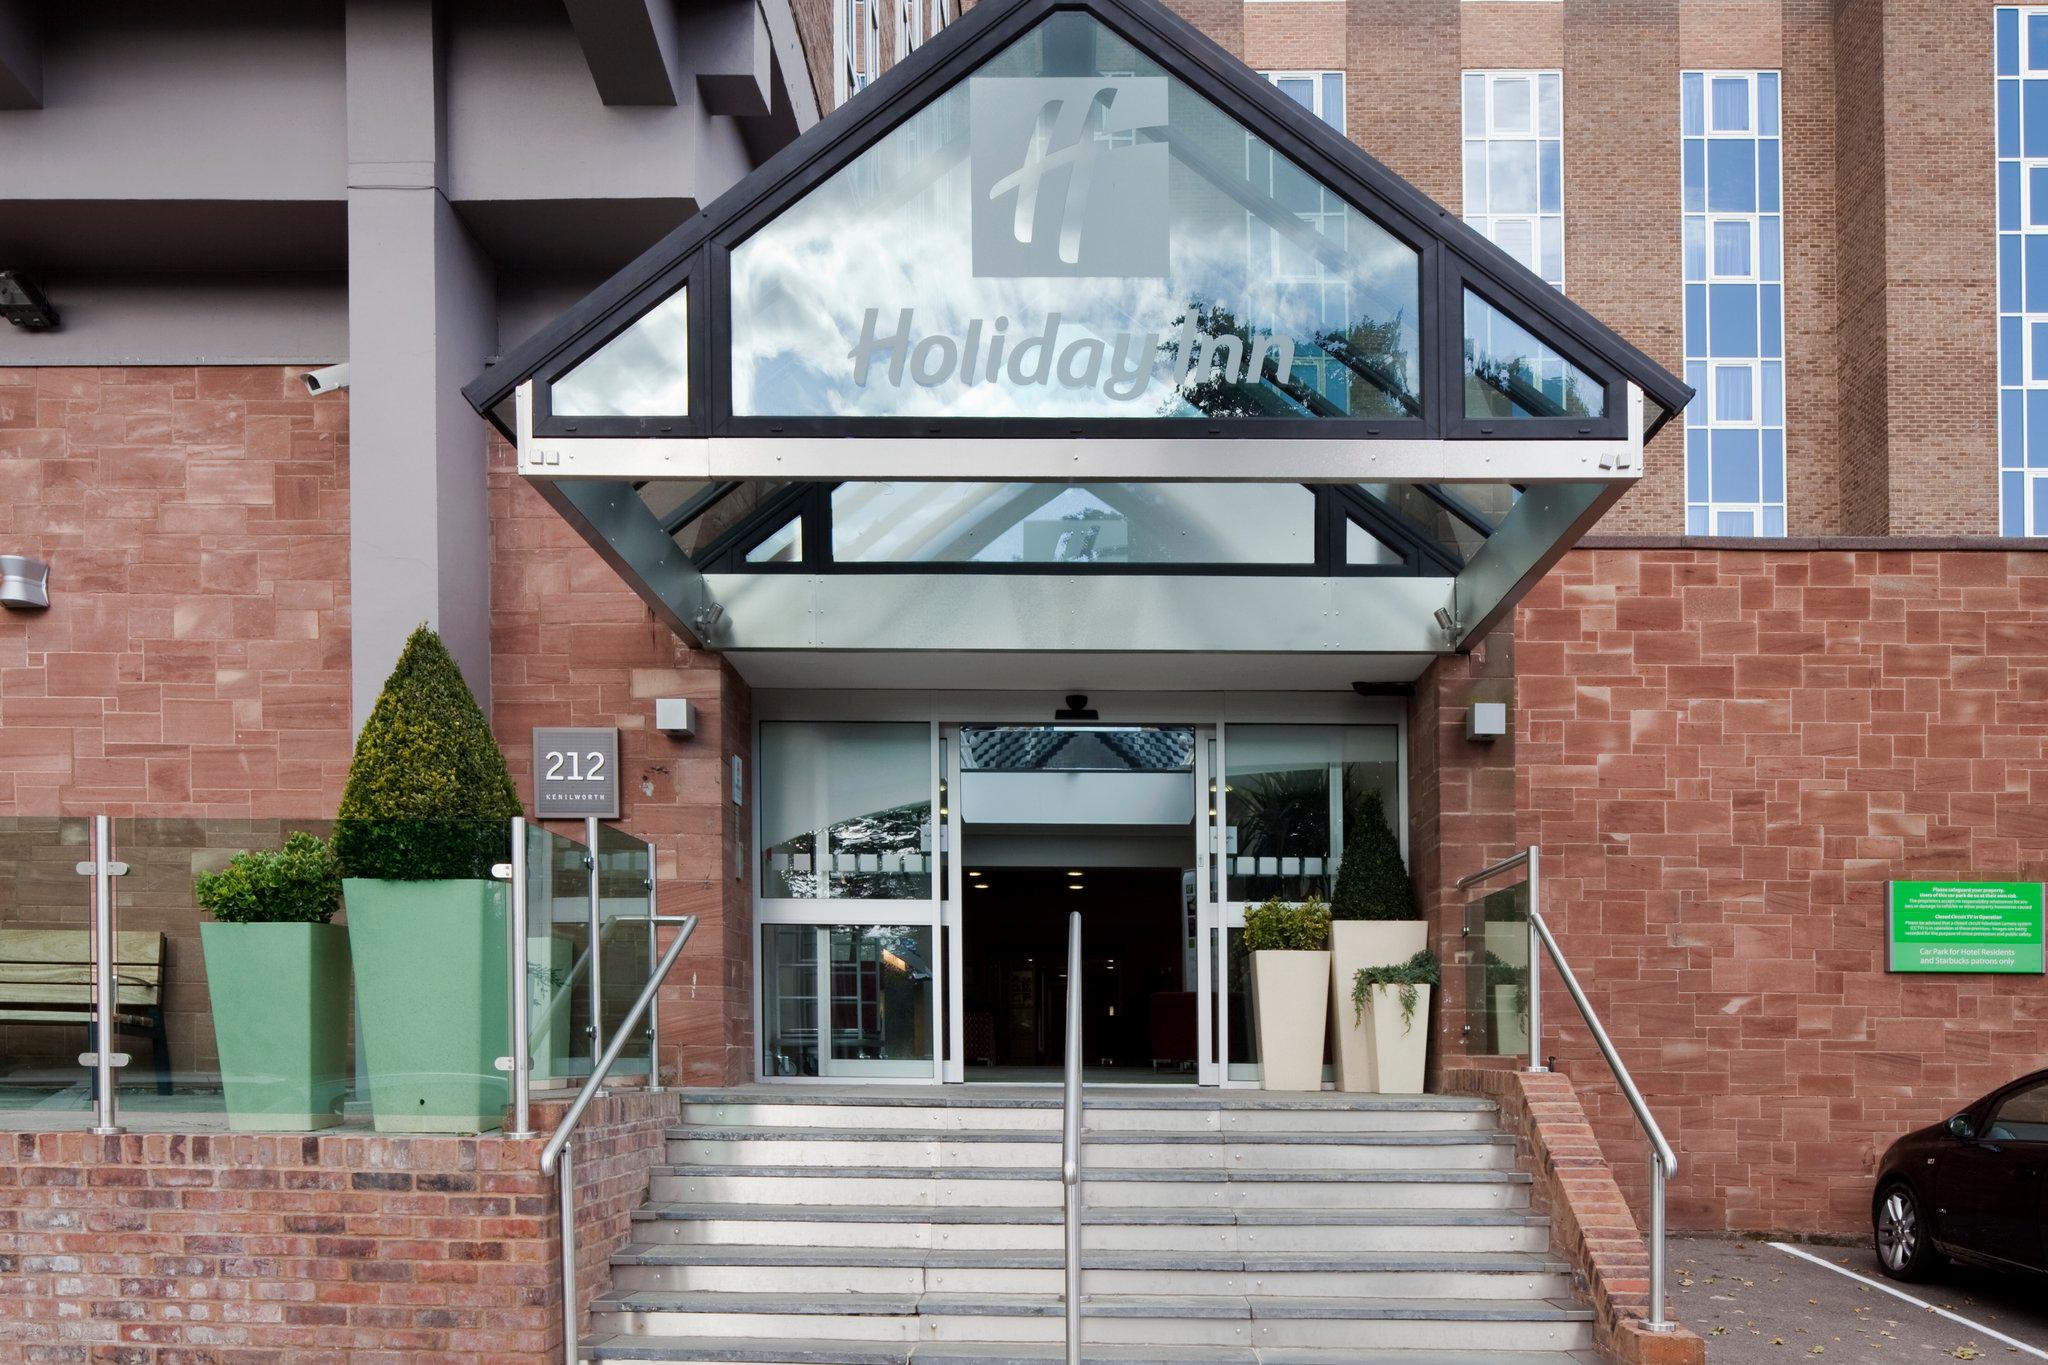 Holiday Inn Kenilworth - Warwick, an IHG Hotel Kenilworth 01926 855957